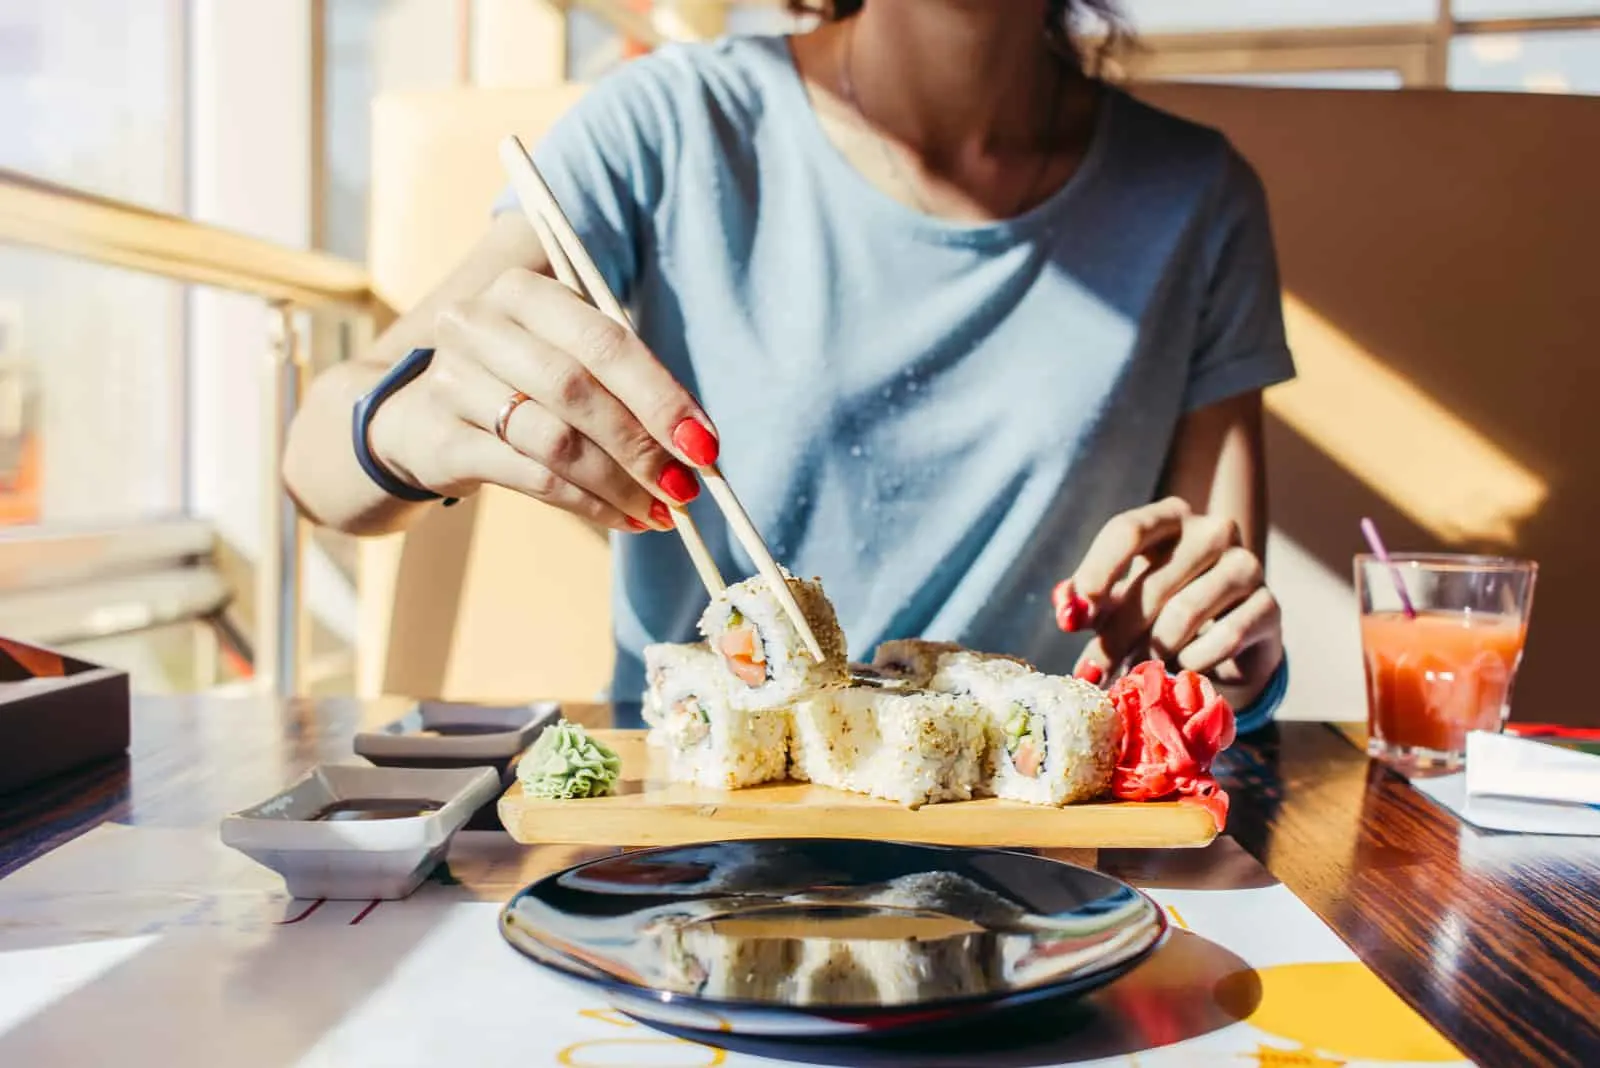 Frau im blauen Hemd isst an einem Sushi-Restaurant